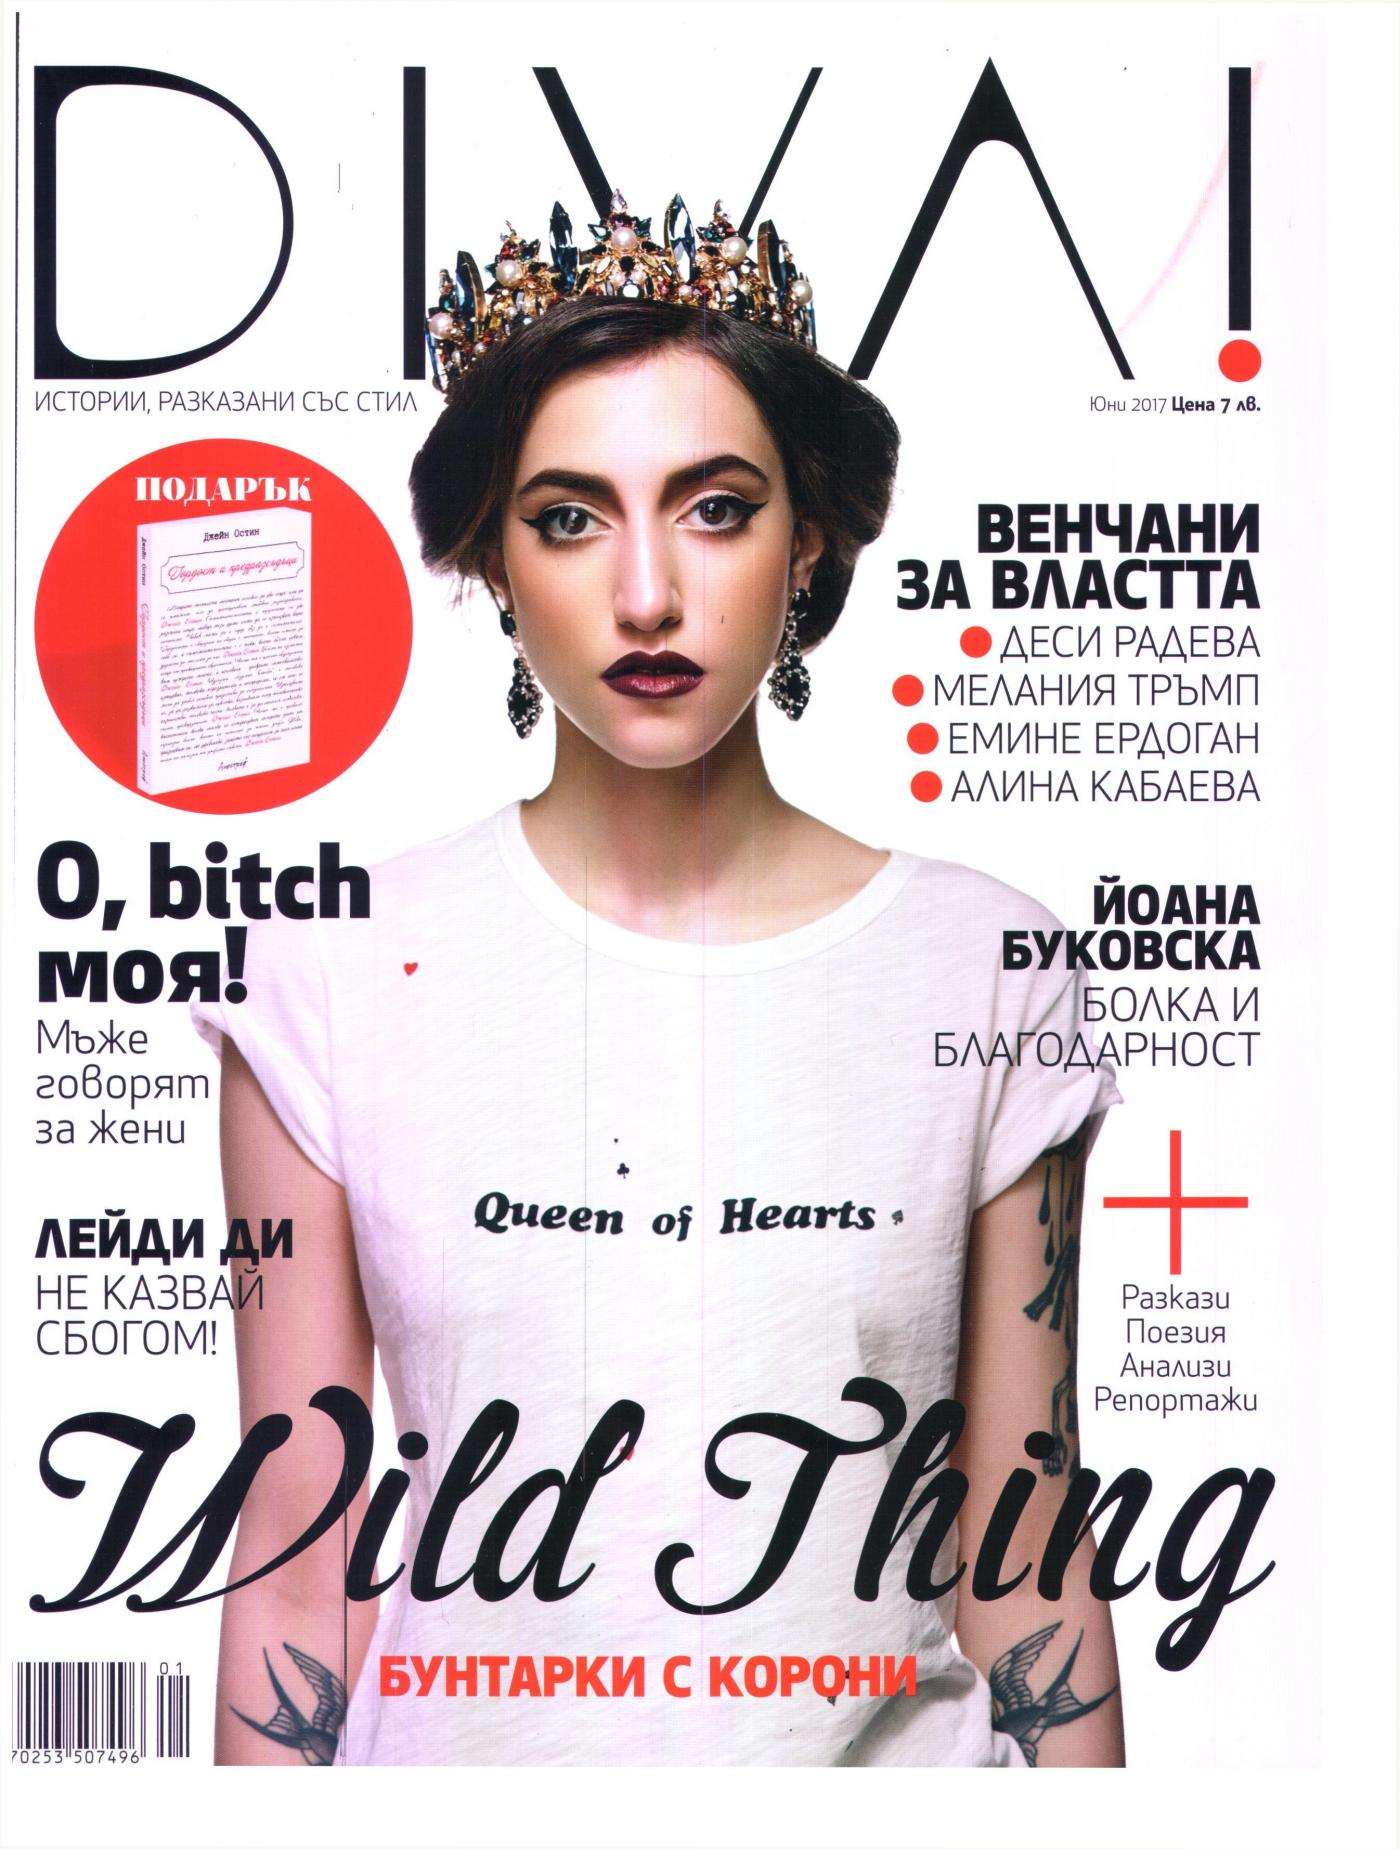 Ново дамско списание DIVA! вече на пазара